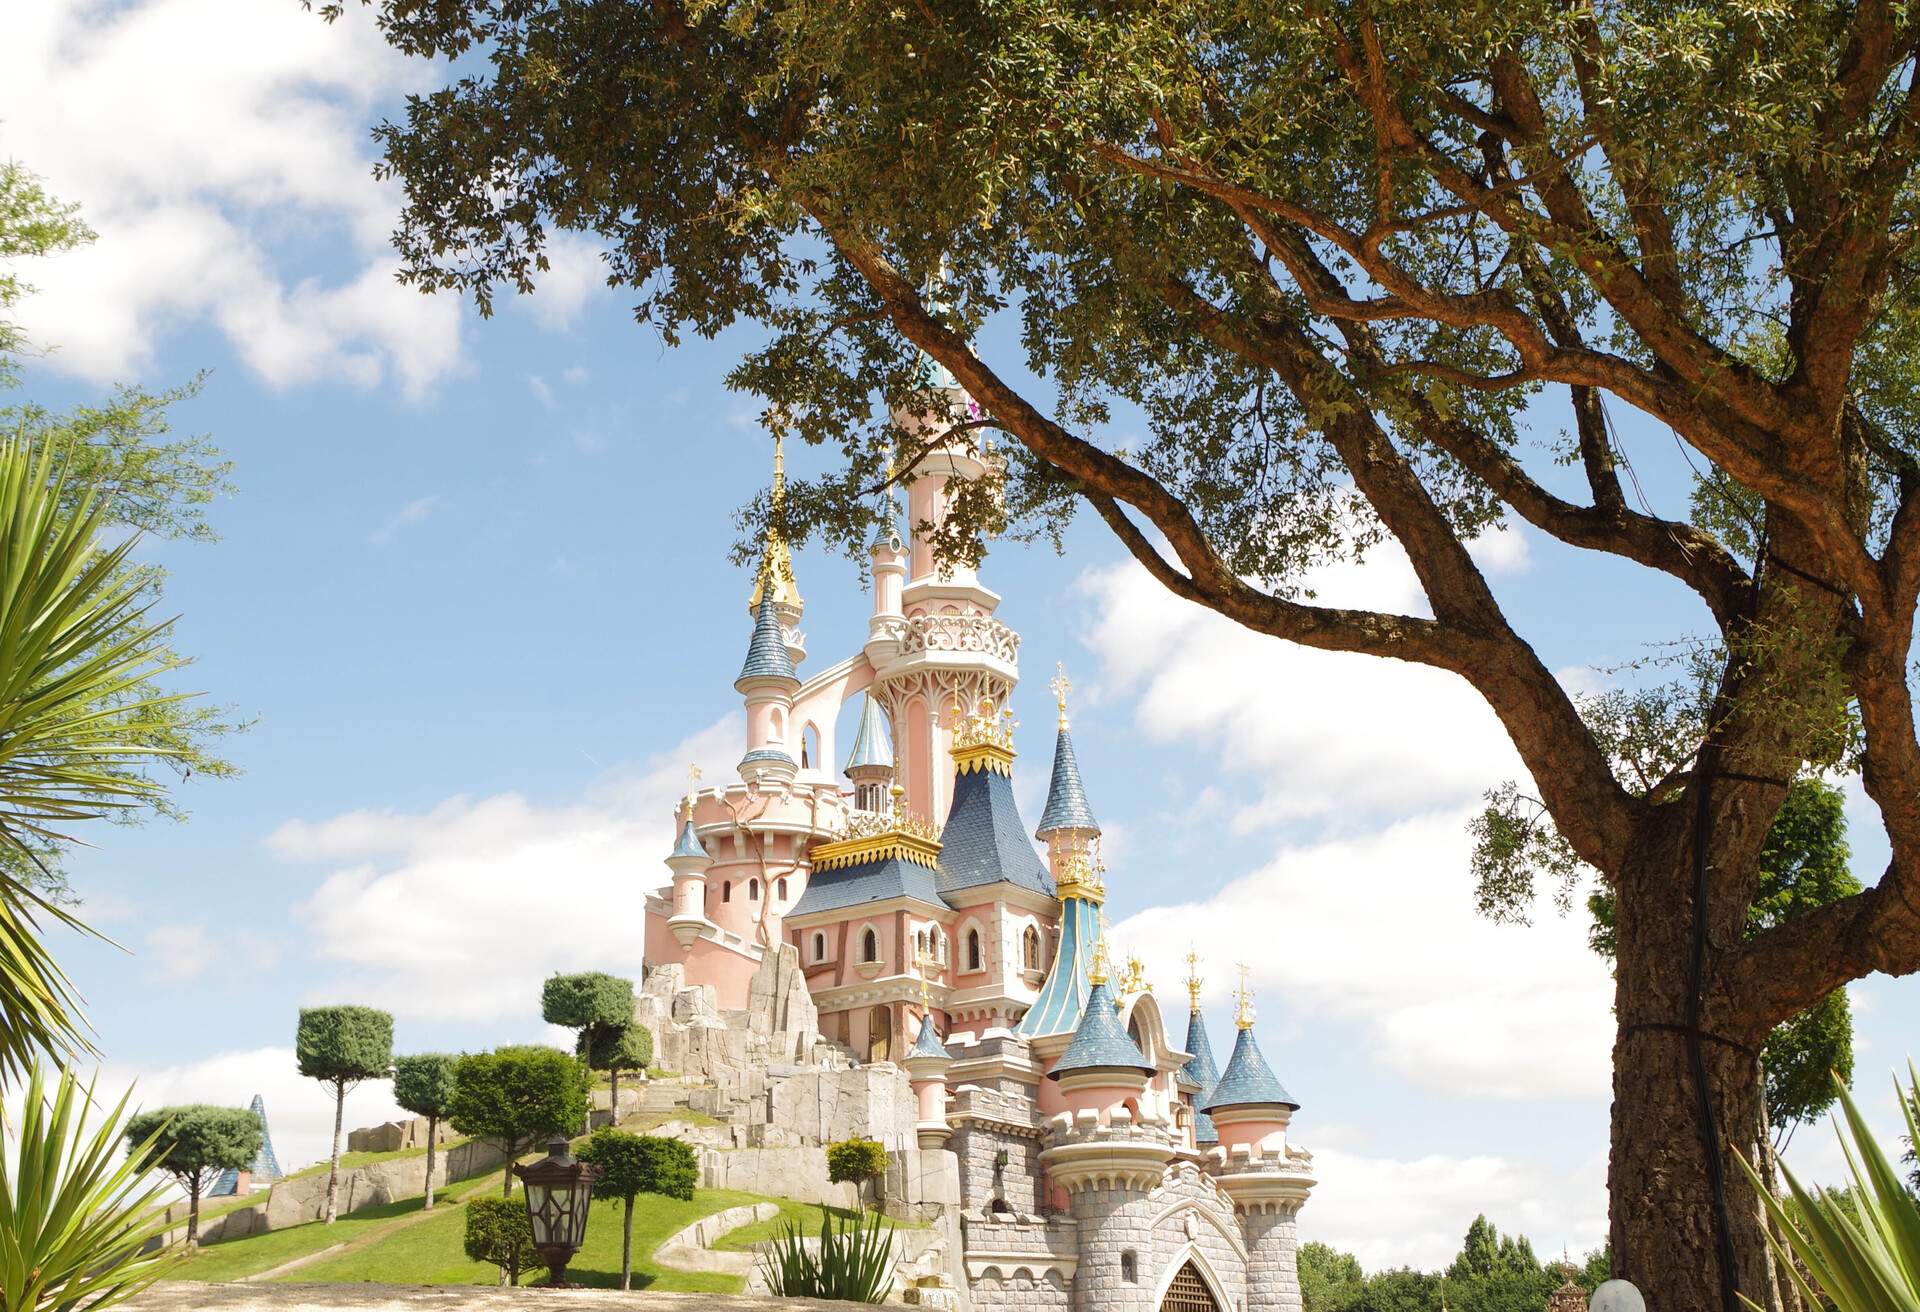 Disneyland Paris castle, France